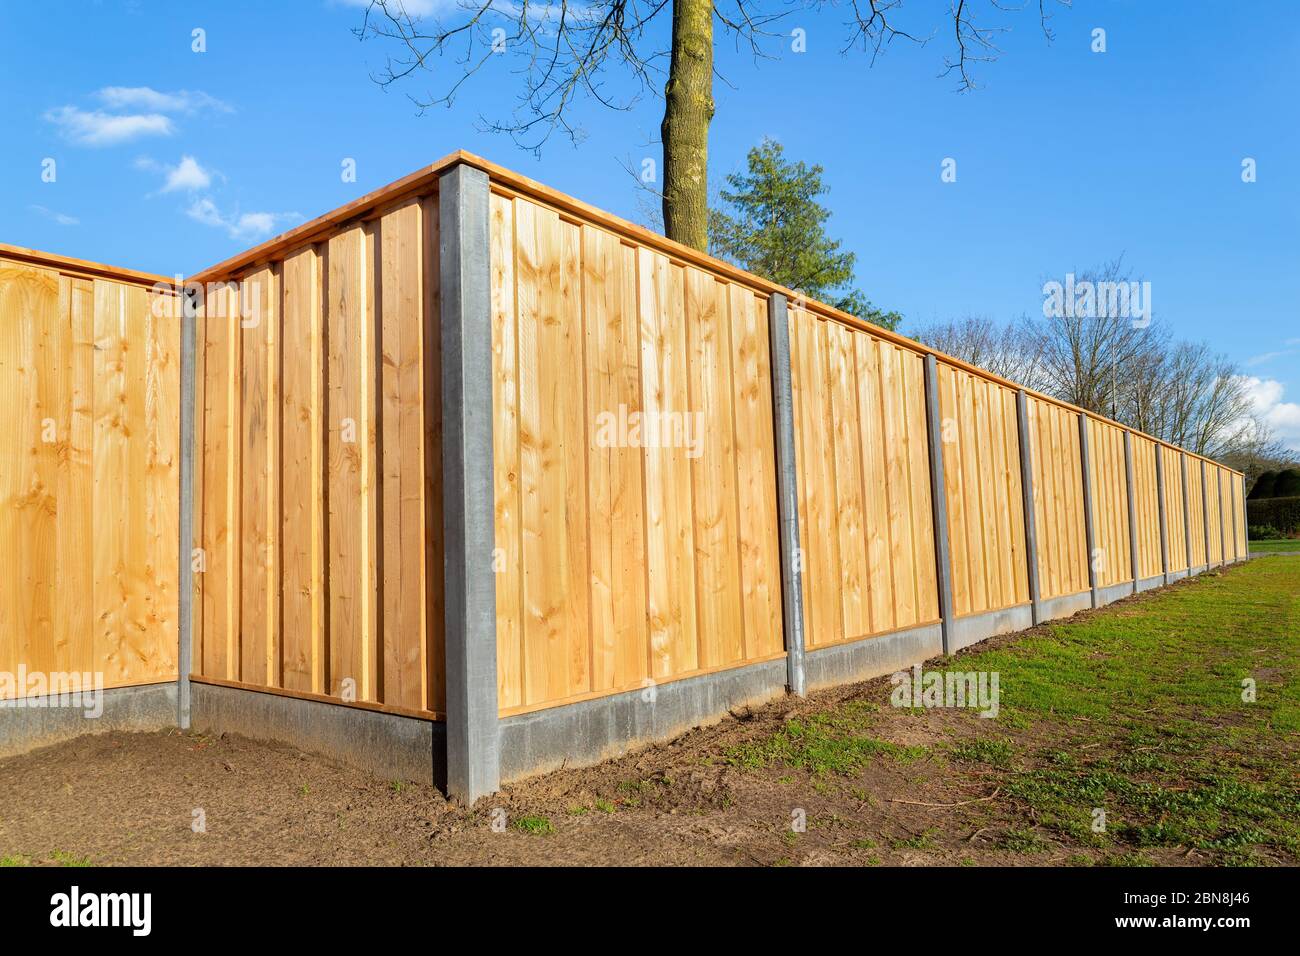 Nouvelle clôture en bois construite à l'extérieur entourant le jardin hollandais Banque D'Images